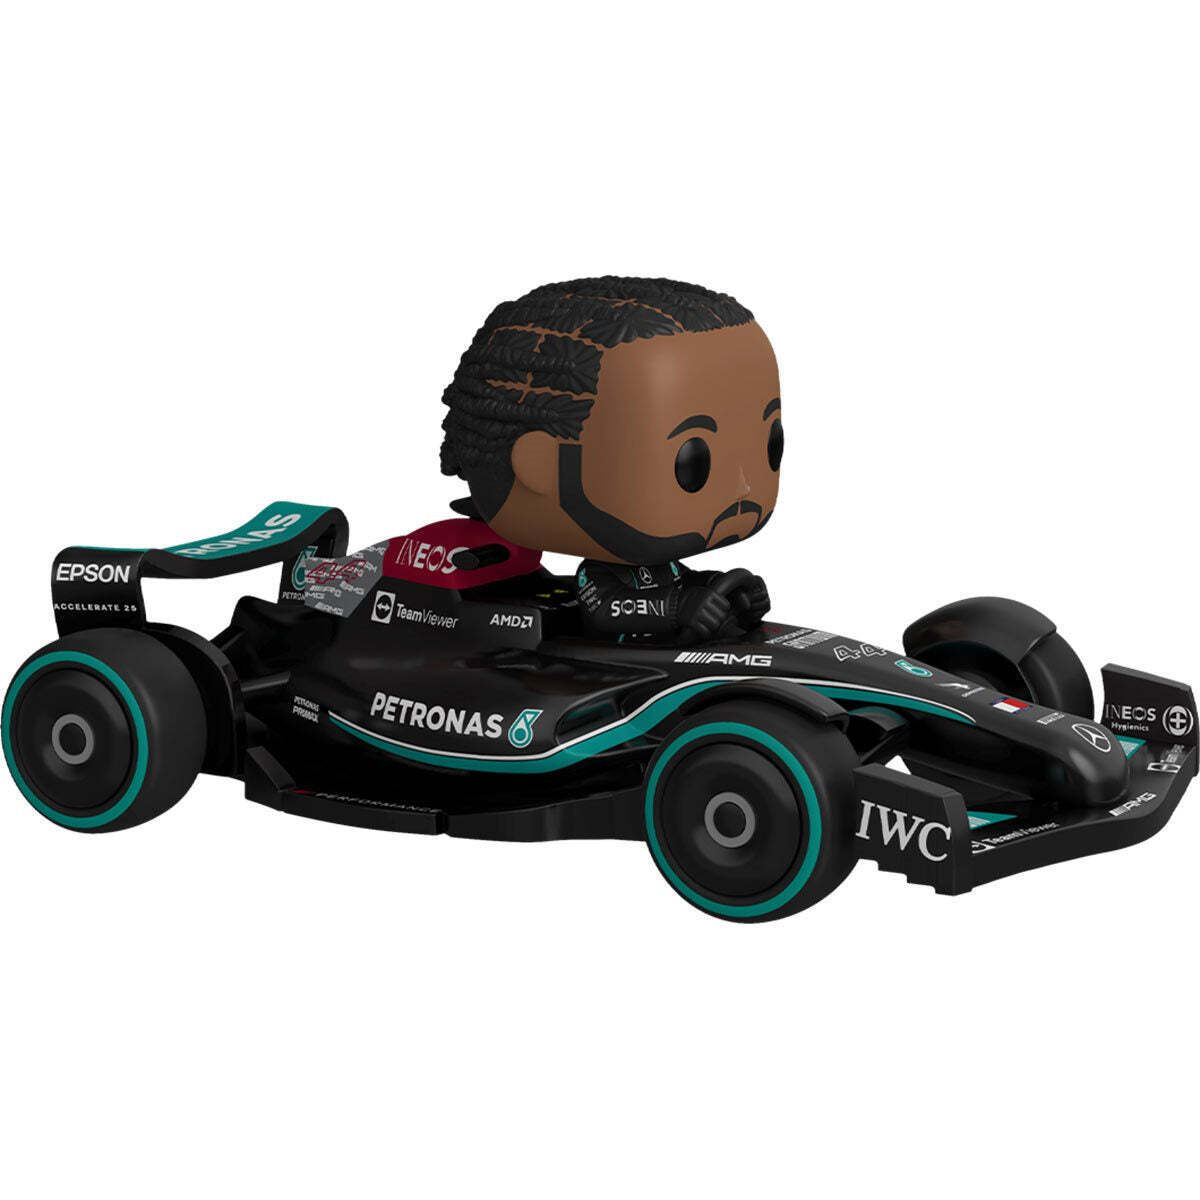 Funko Pop Super Deluxe - Racing: Mercedes Racing - Lewis Hamilton in Vehicle #3